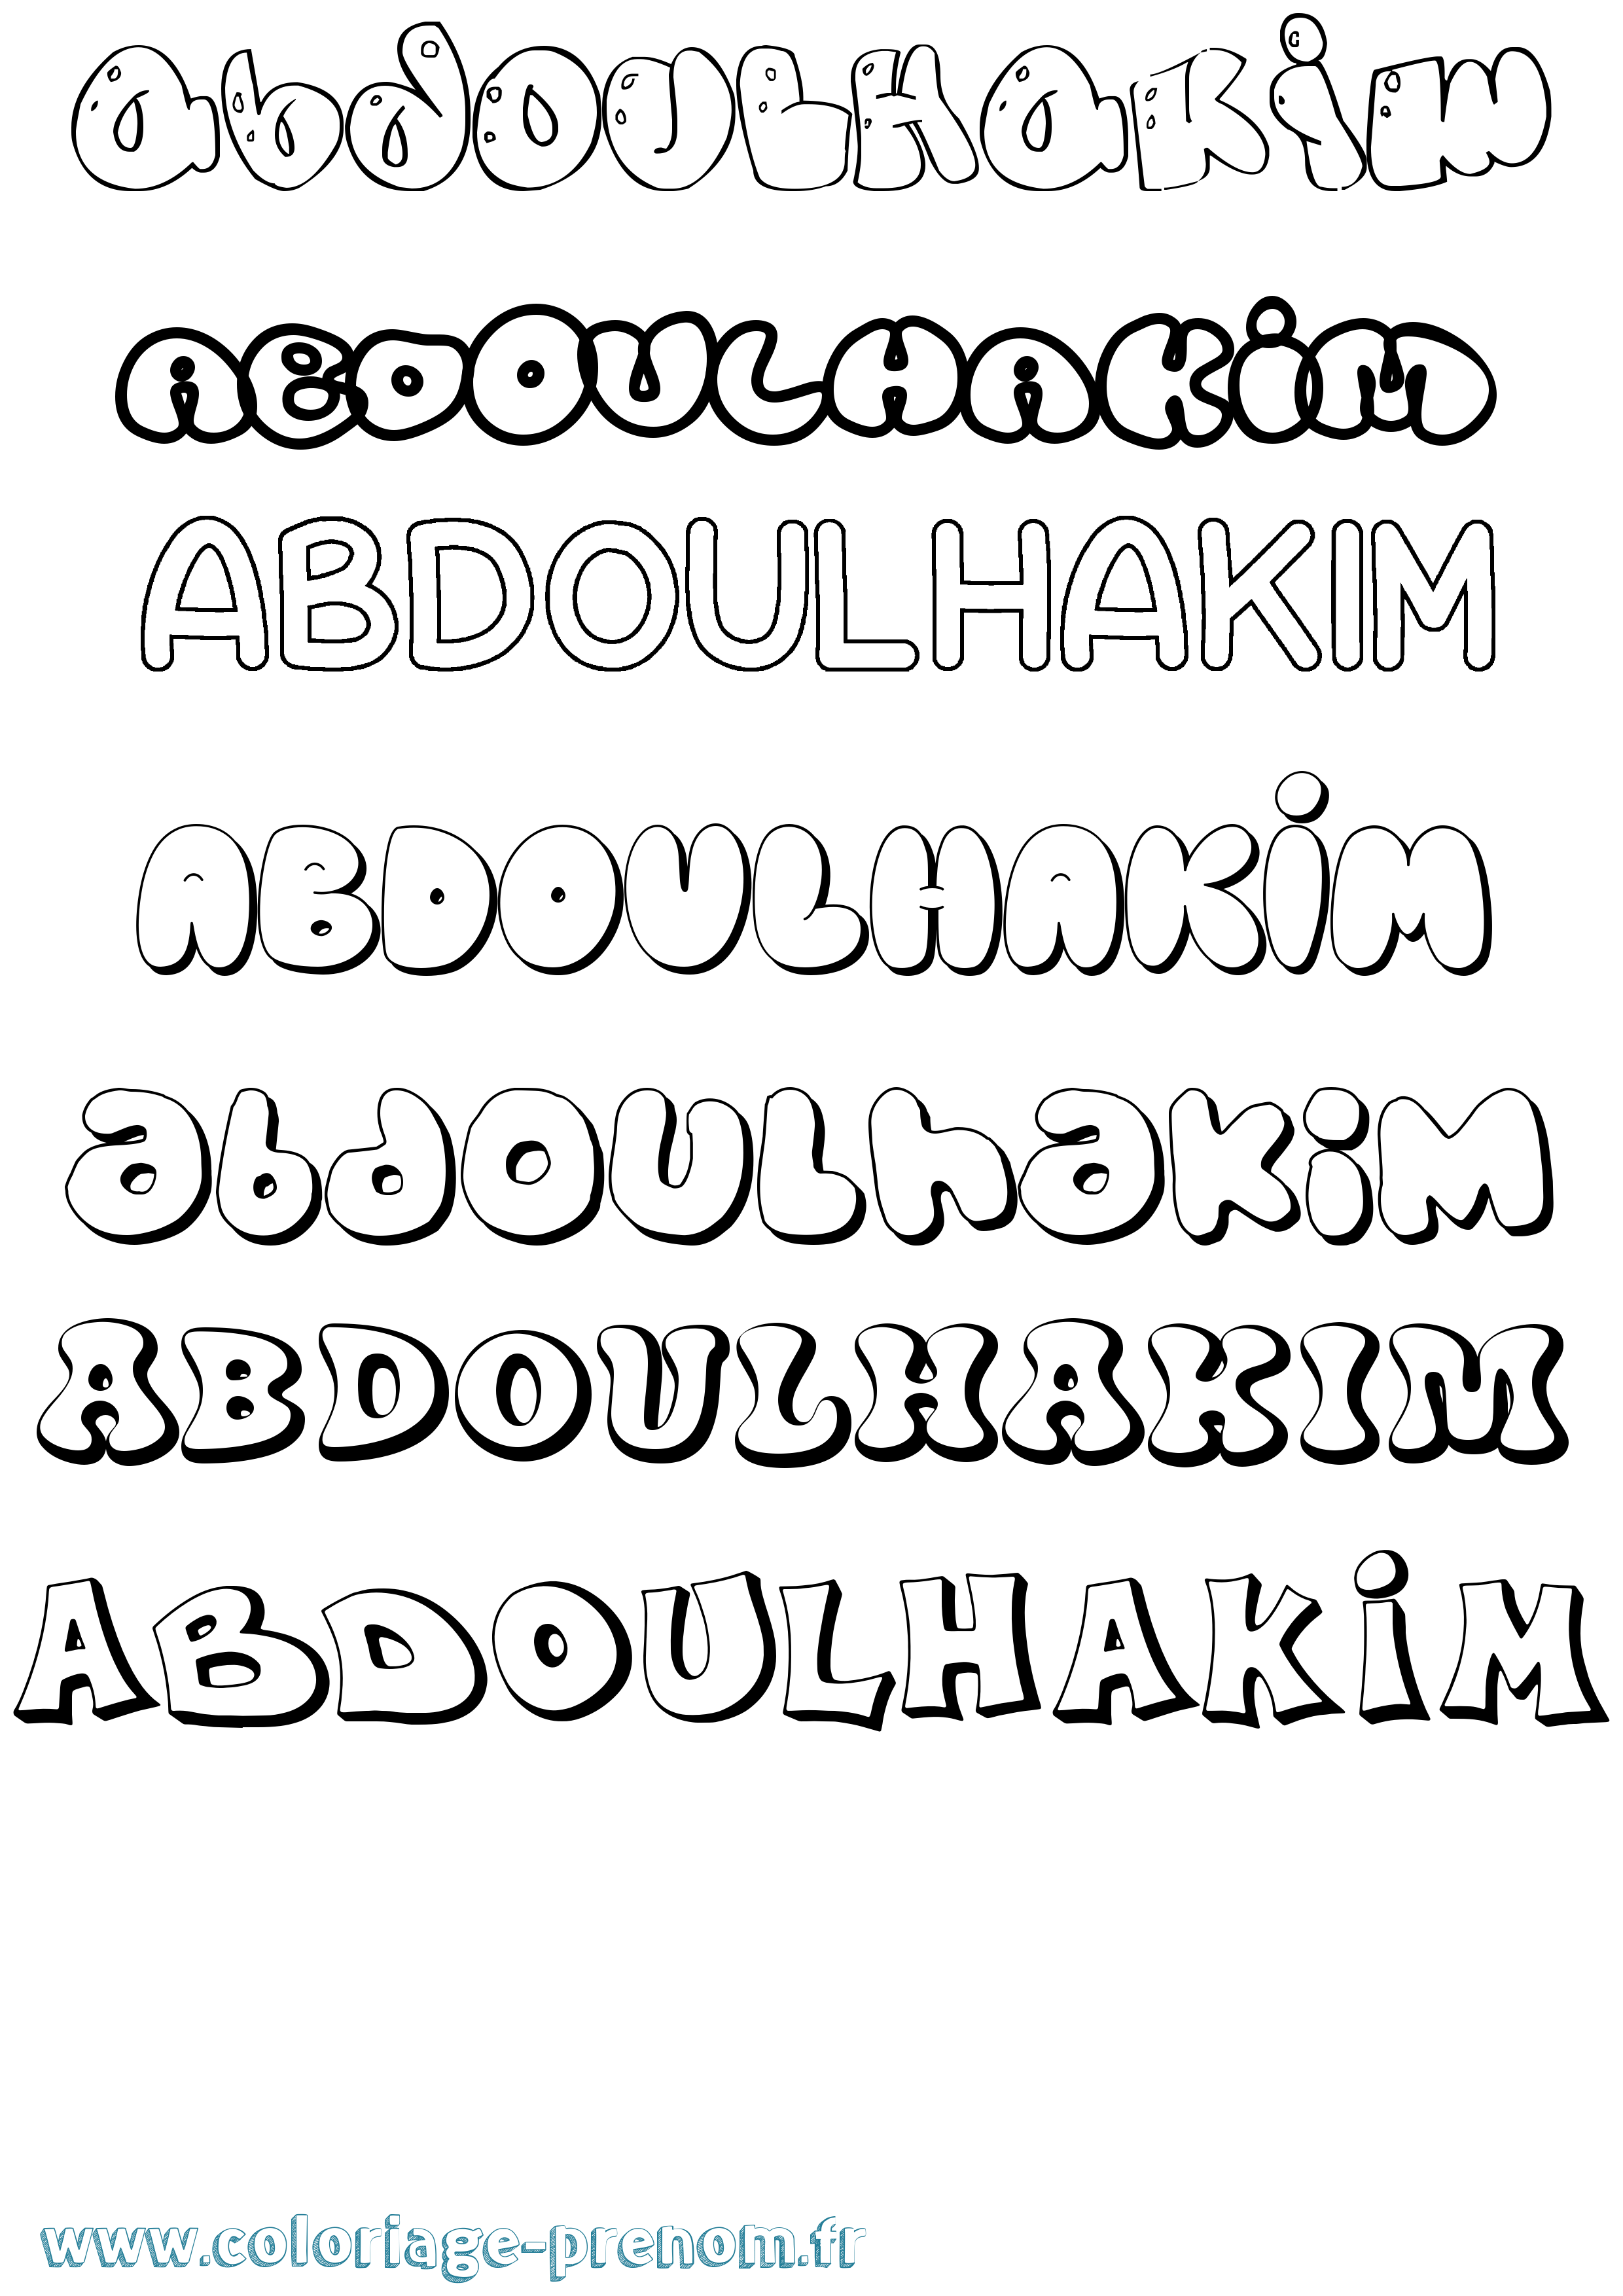 Coloriage prénom Abdoulhakim Bubble